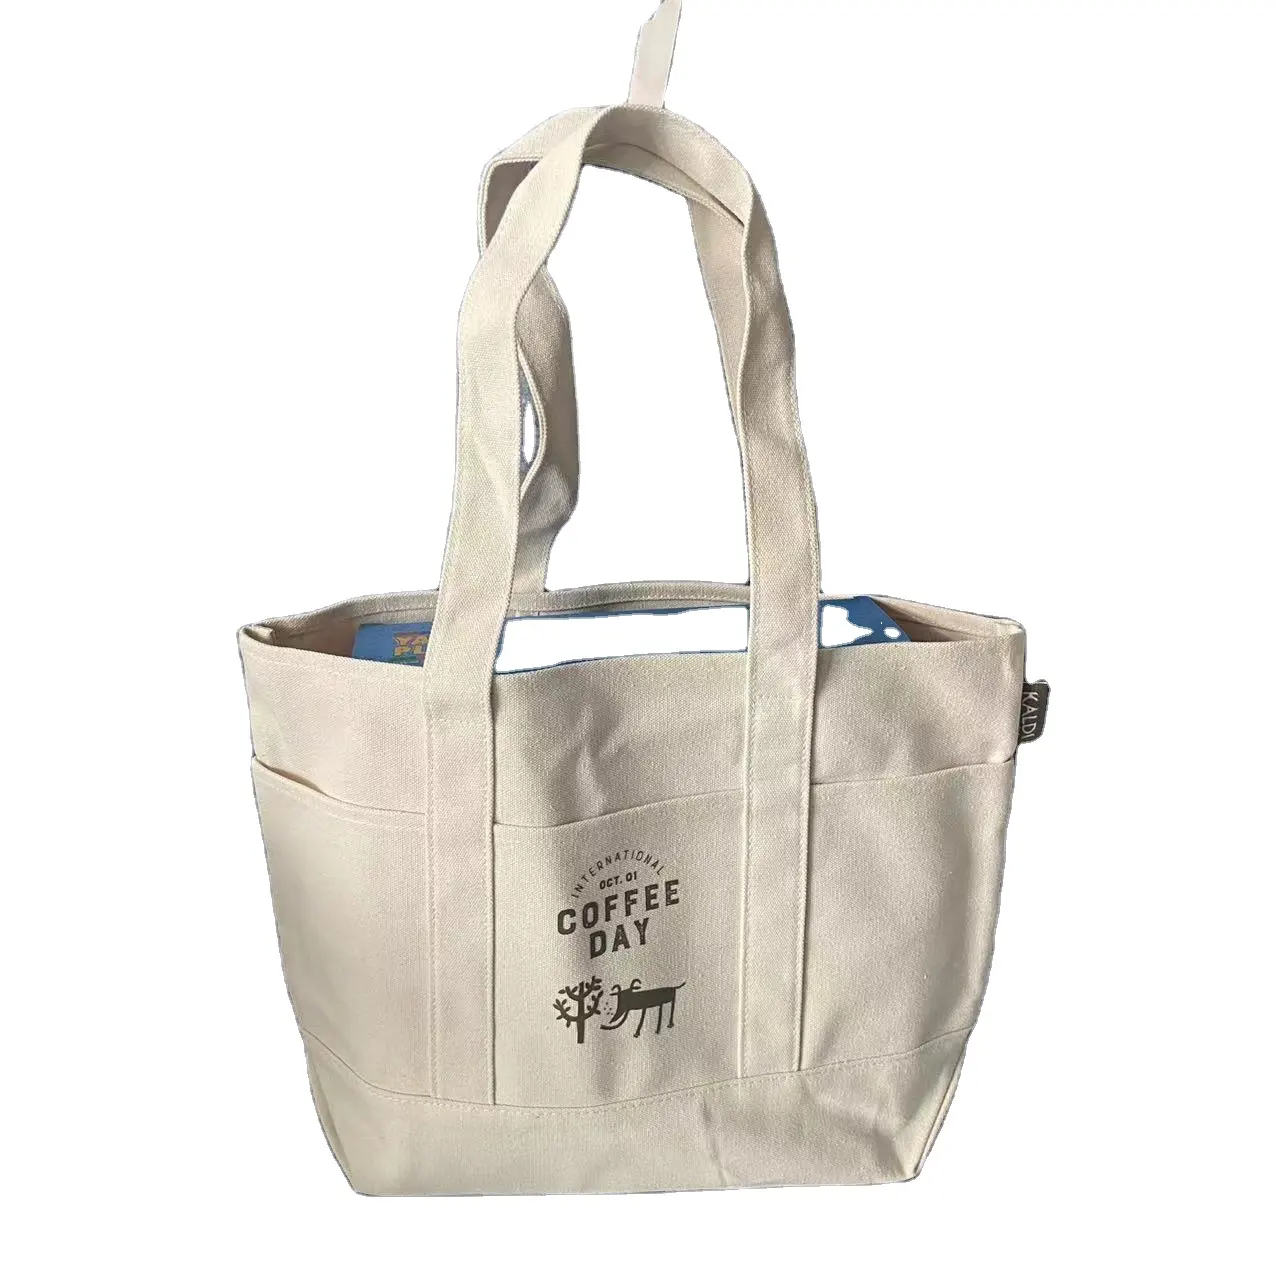 Tote Bag in tela di cotone Extra Large personalizzata Tote Bag personalizzate riutilizzabili borsa in tela di cotone con tasche frontali